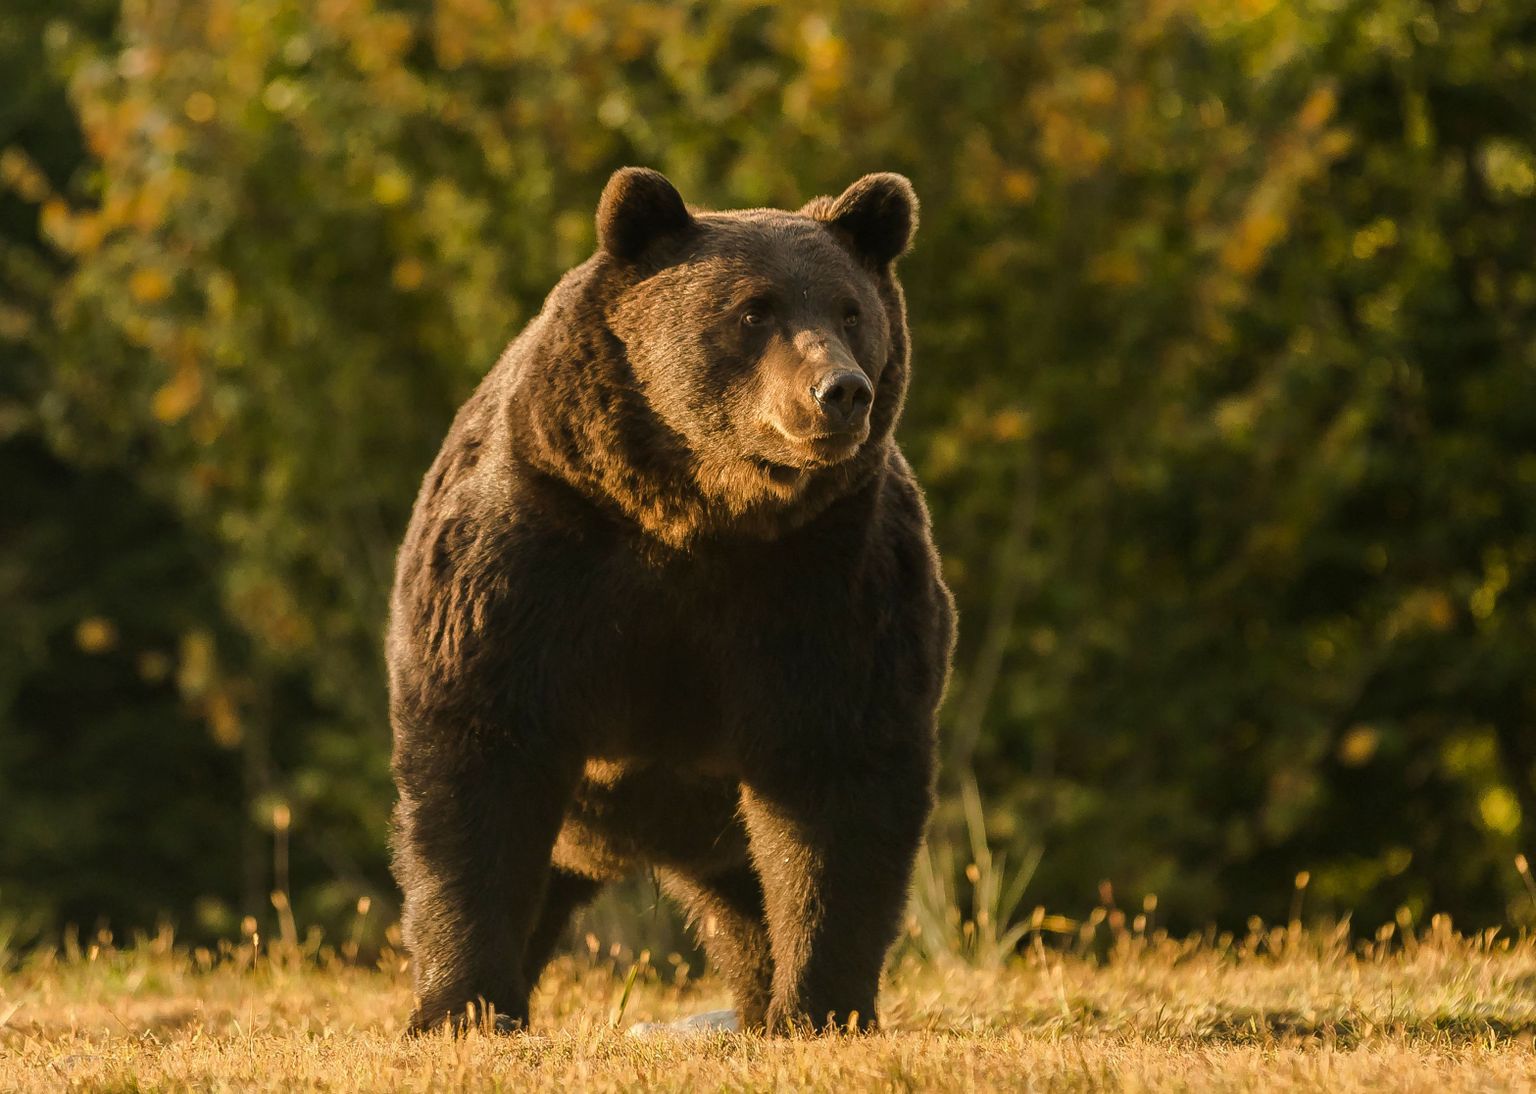 Pildil Euroopa suurim karu Arthur, kelle keskkonnaorganisatsiooni Agent Green andmetel lasi Liechtensteini prints maha